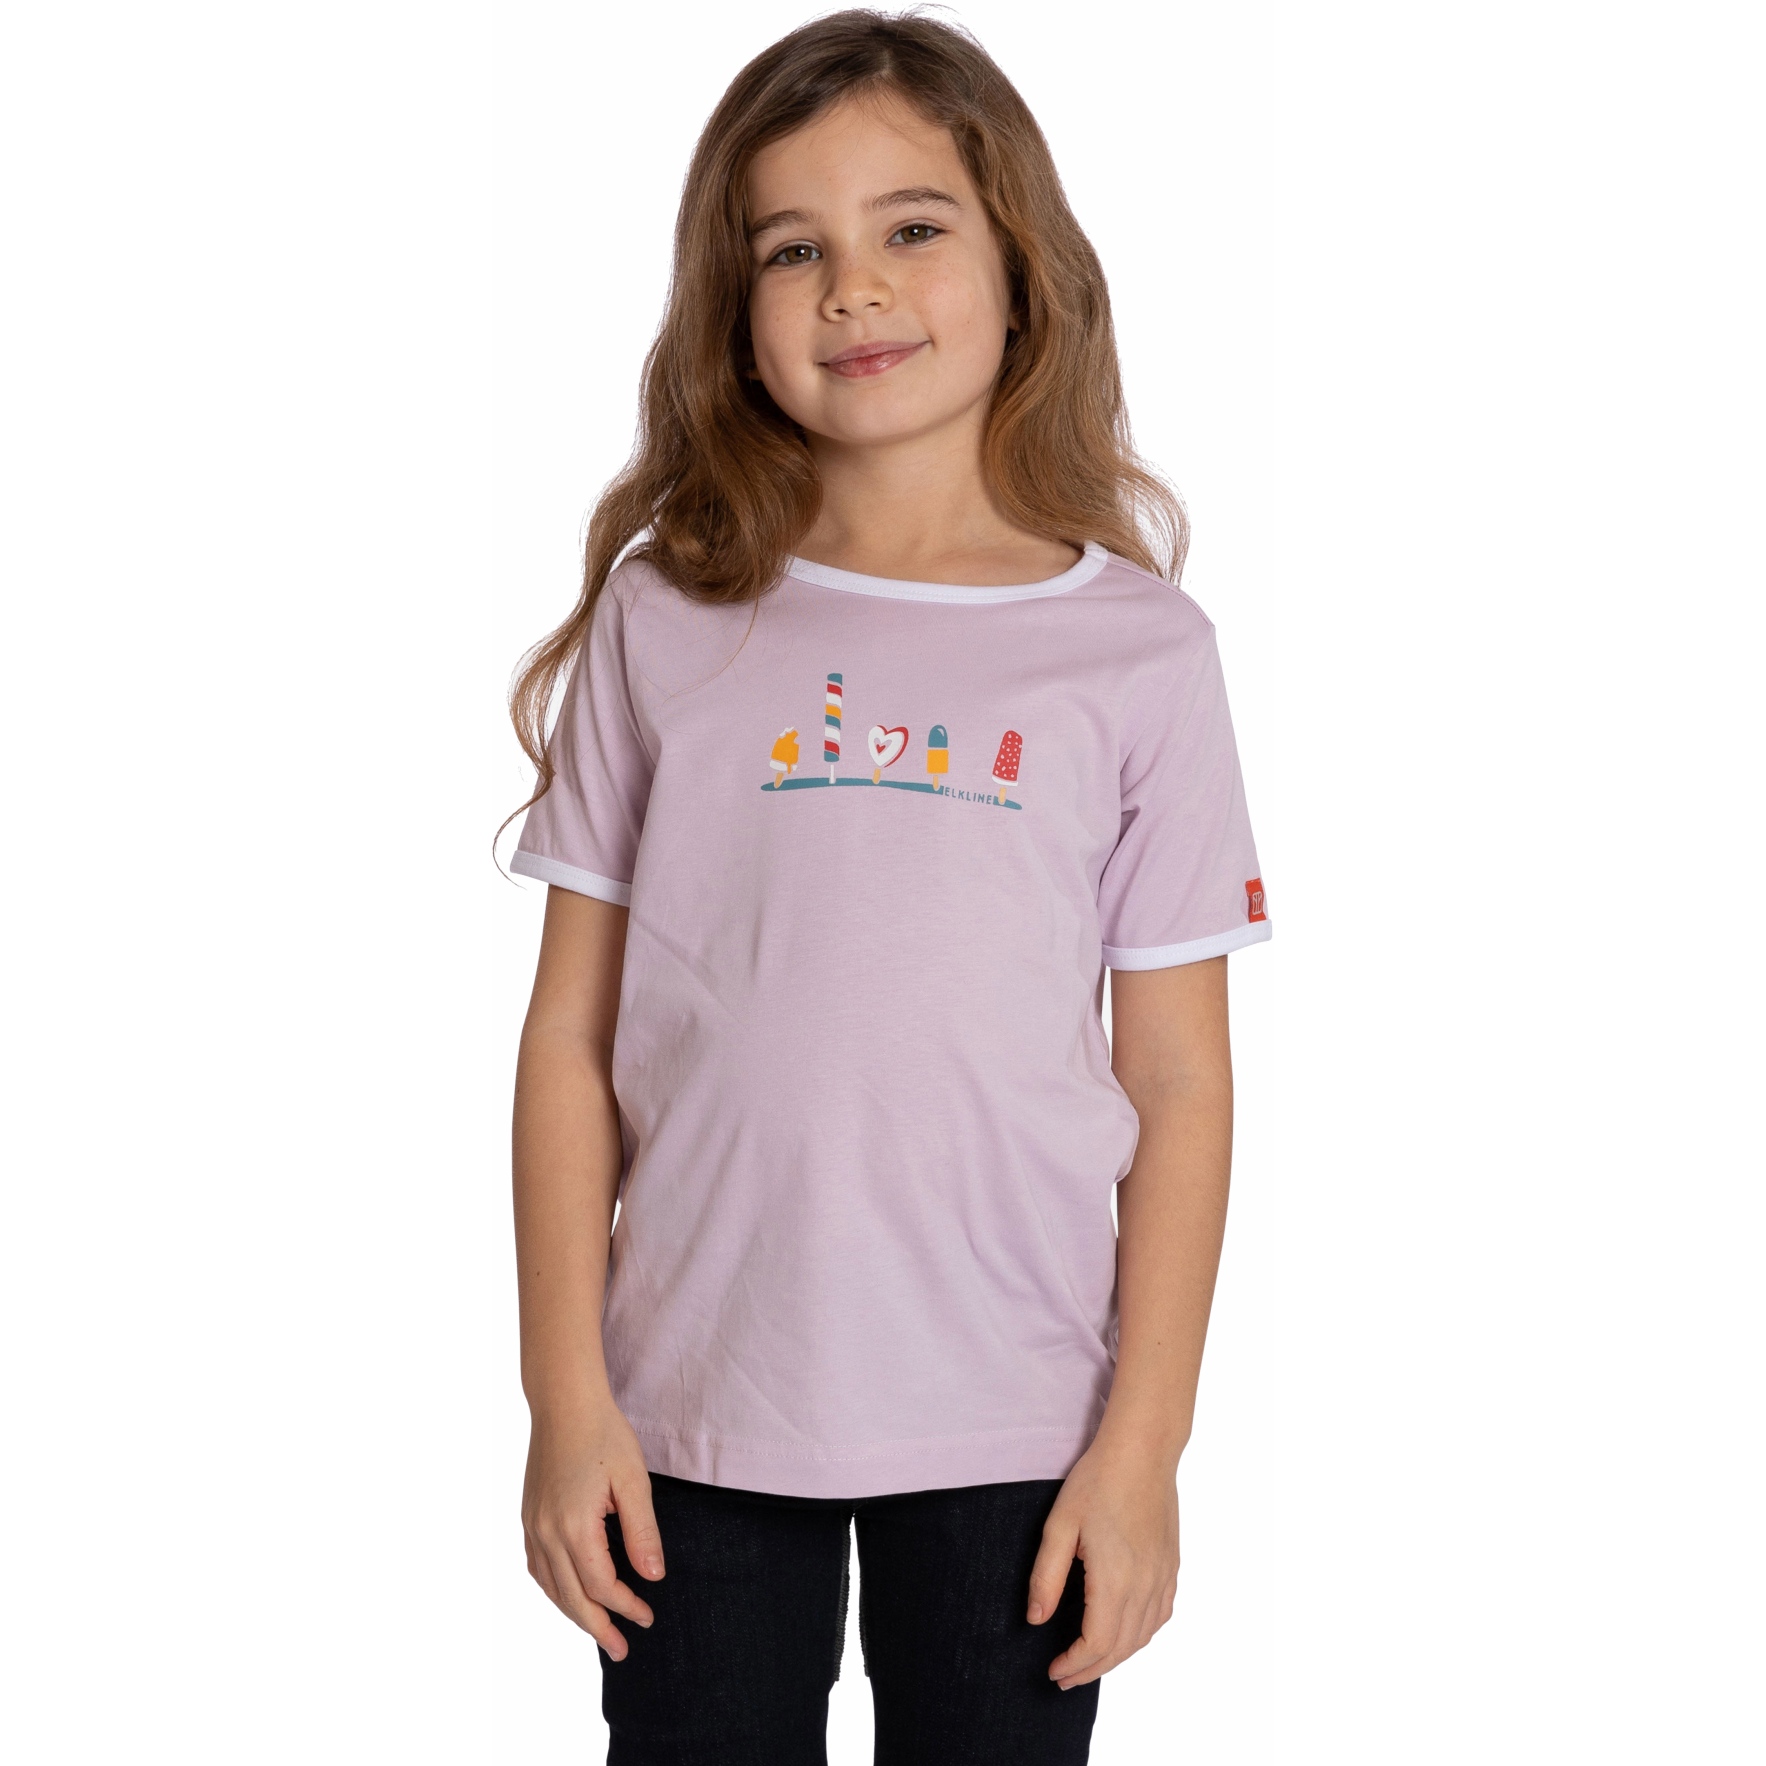 Produktbild von Elkline ICECREAM T-Shirt Mädchen - lavender